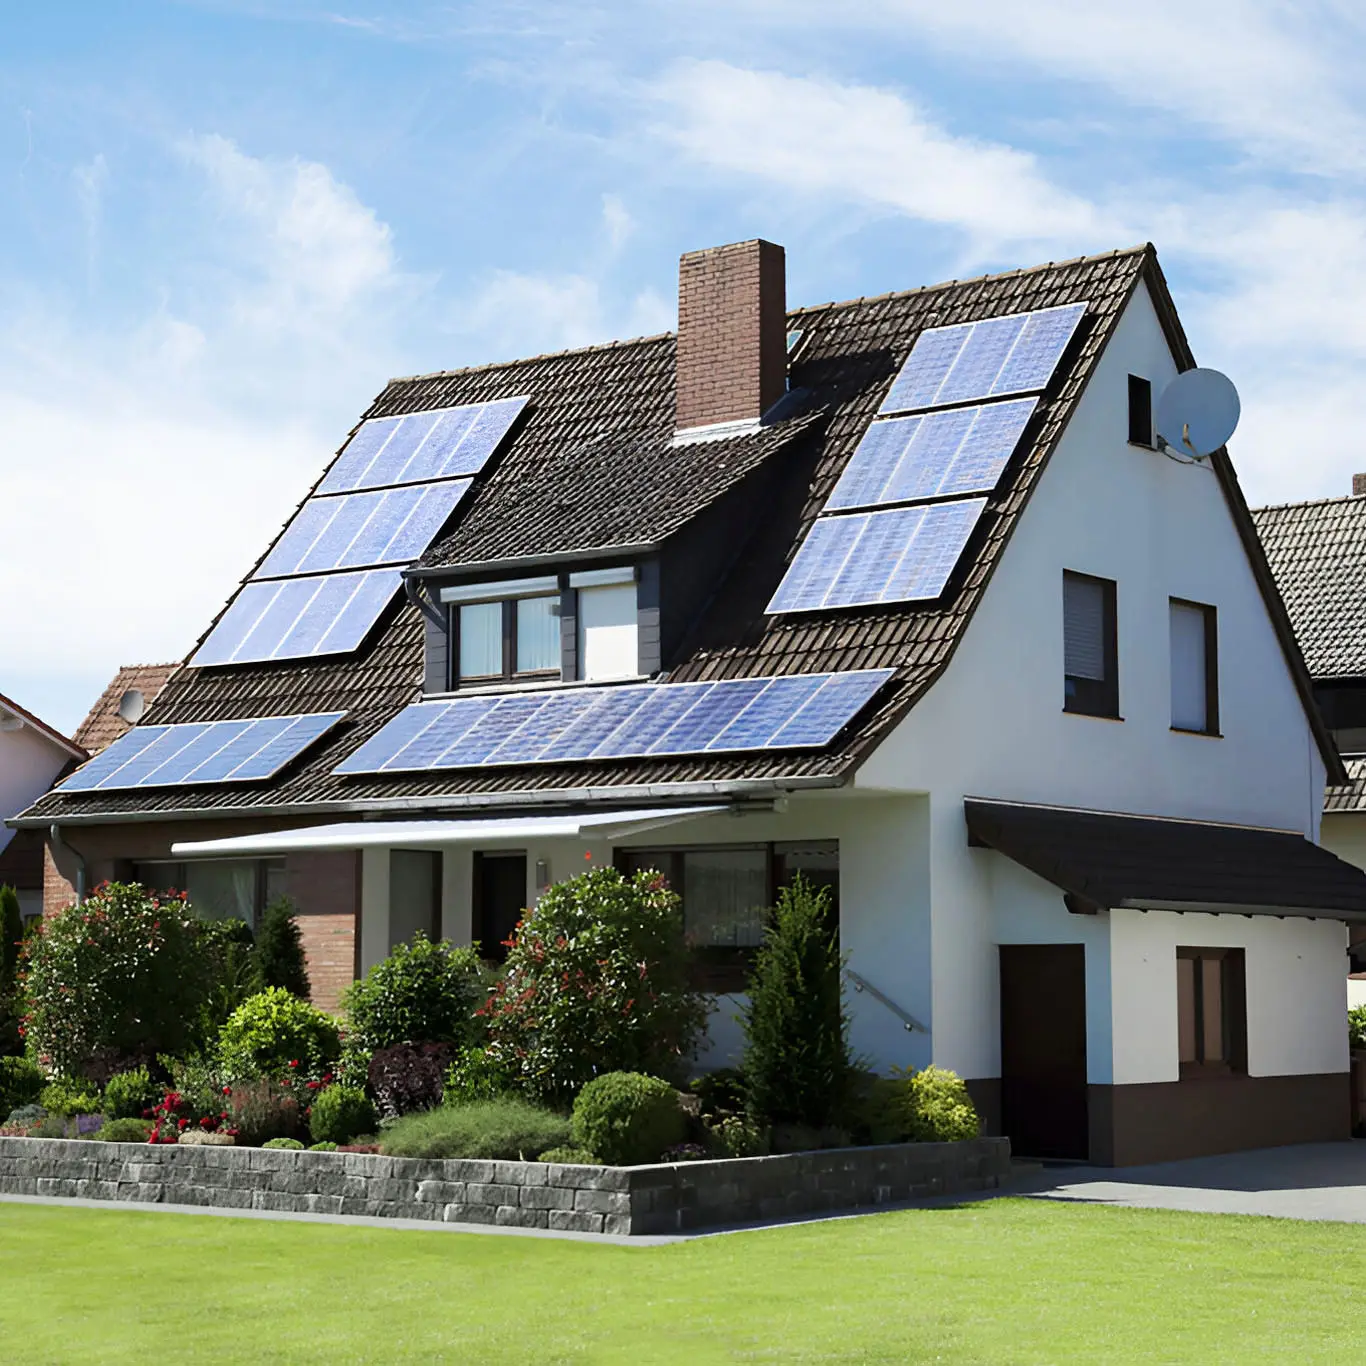 تركيب سهل مجموعة كاملة كاملة للمنزل بالكامل 3 كيلو وات 5 كيلو وات 6 كيلو وات 8 كيلو وات 10 كيلو وات كفاءة عالية أحادي هجين نظام ألواح طاقة شمسية